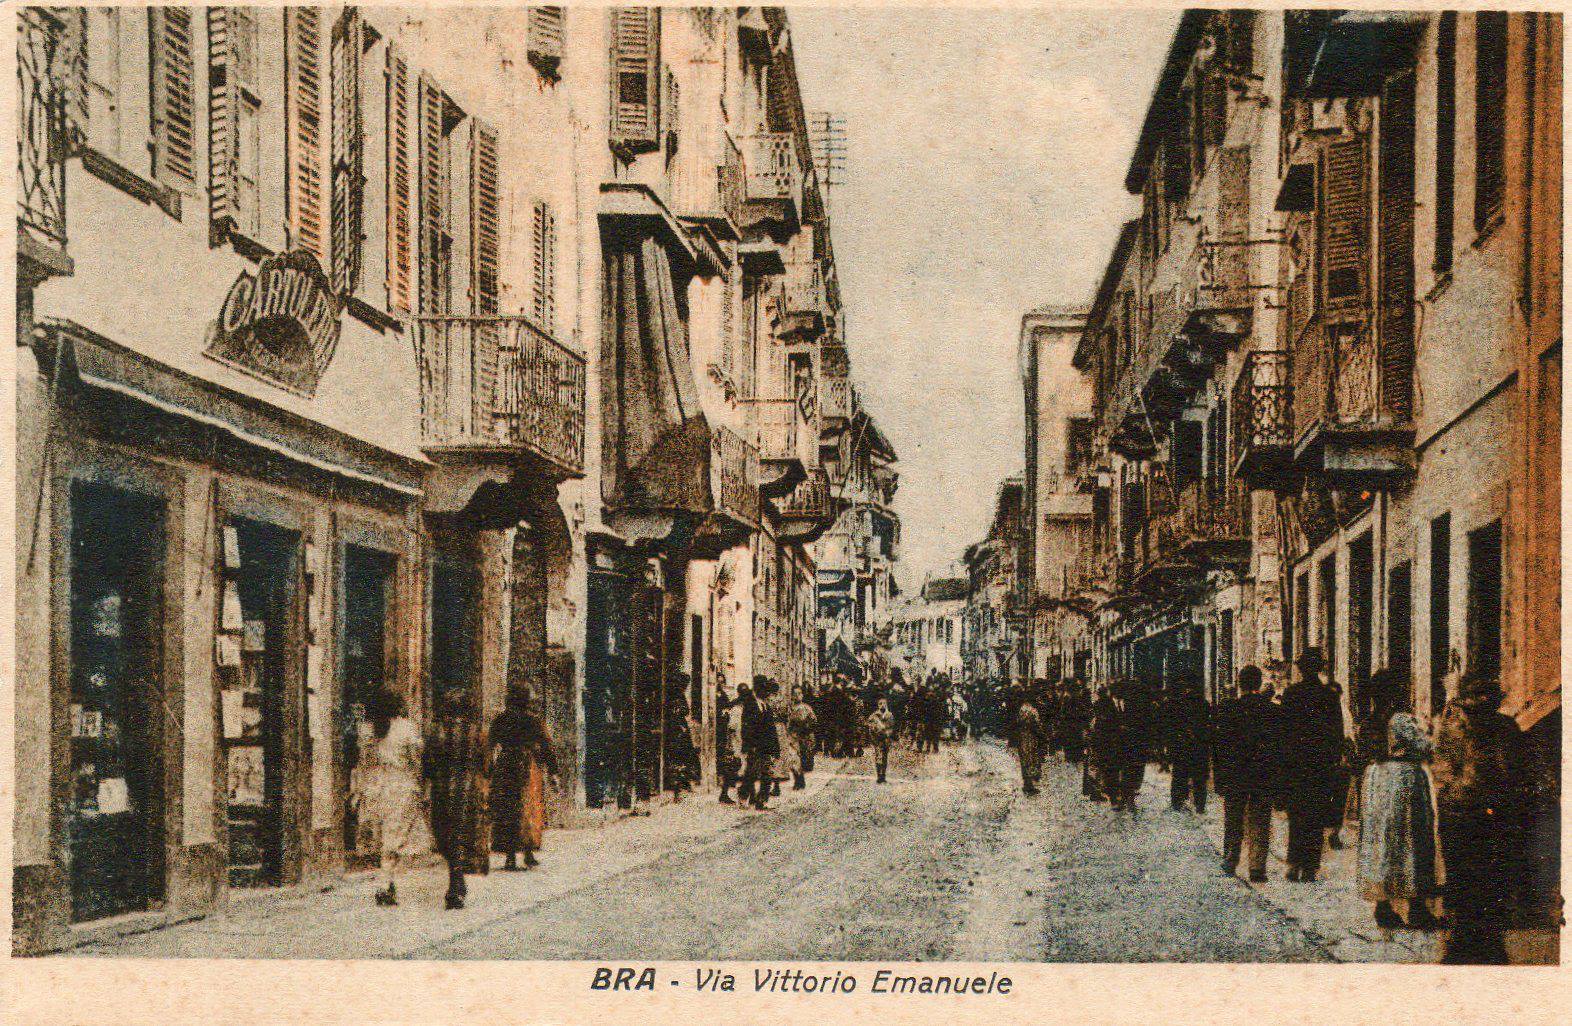 Bra, Via Vittorio Emanuele